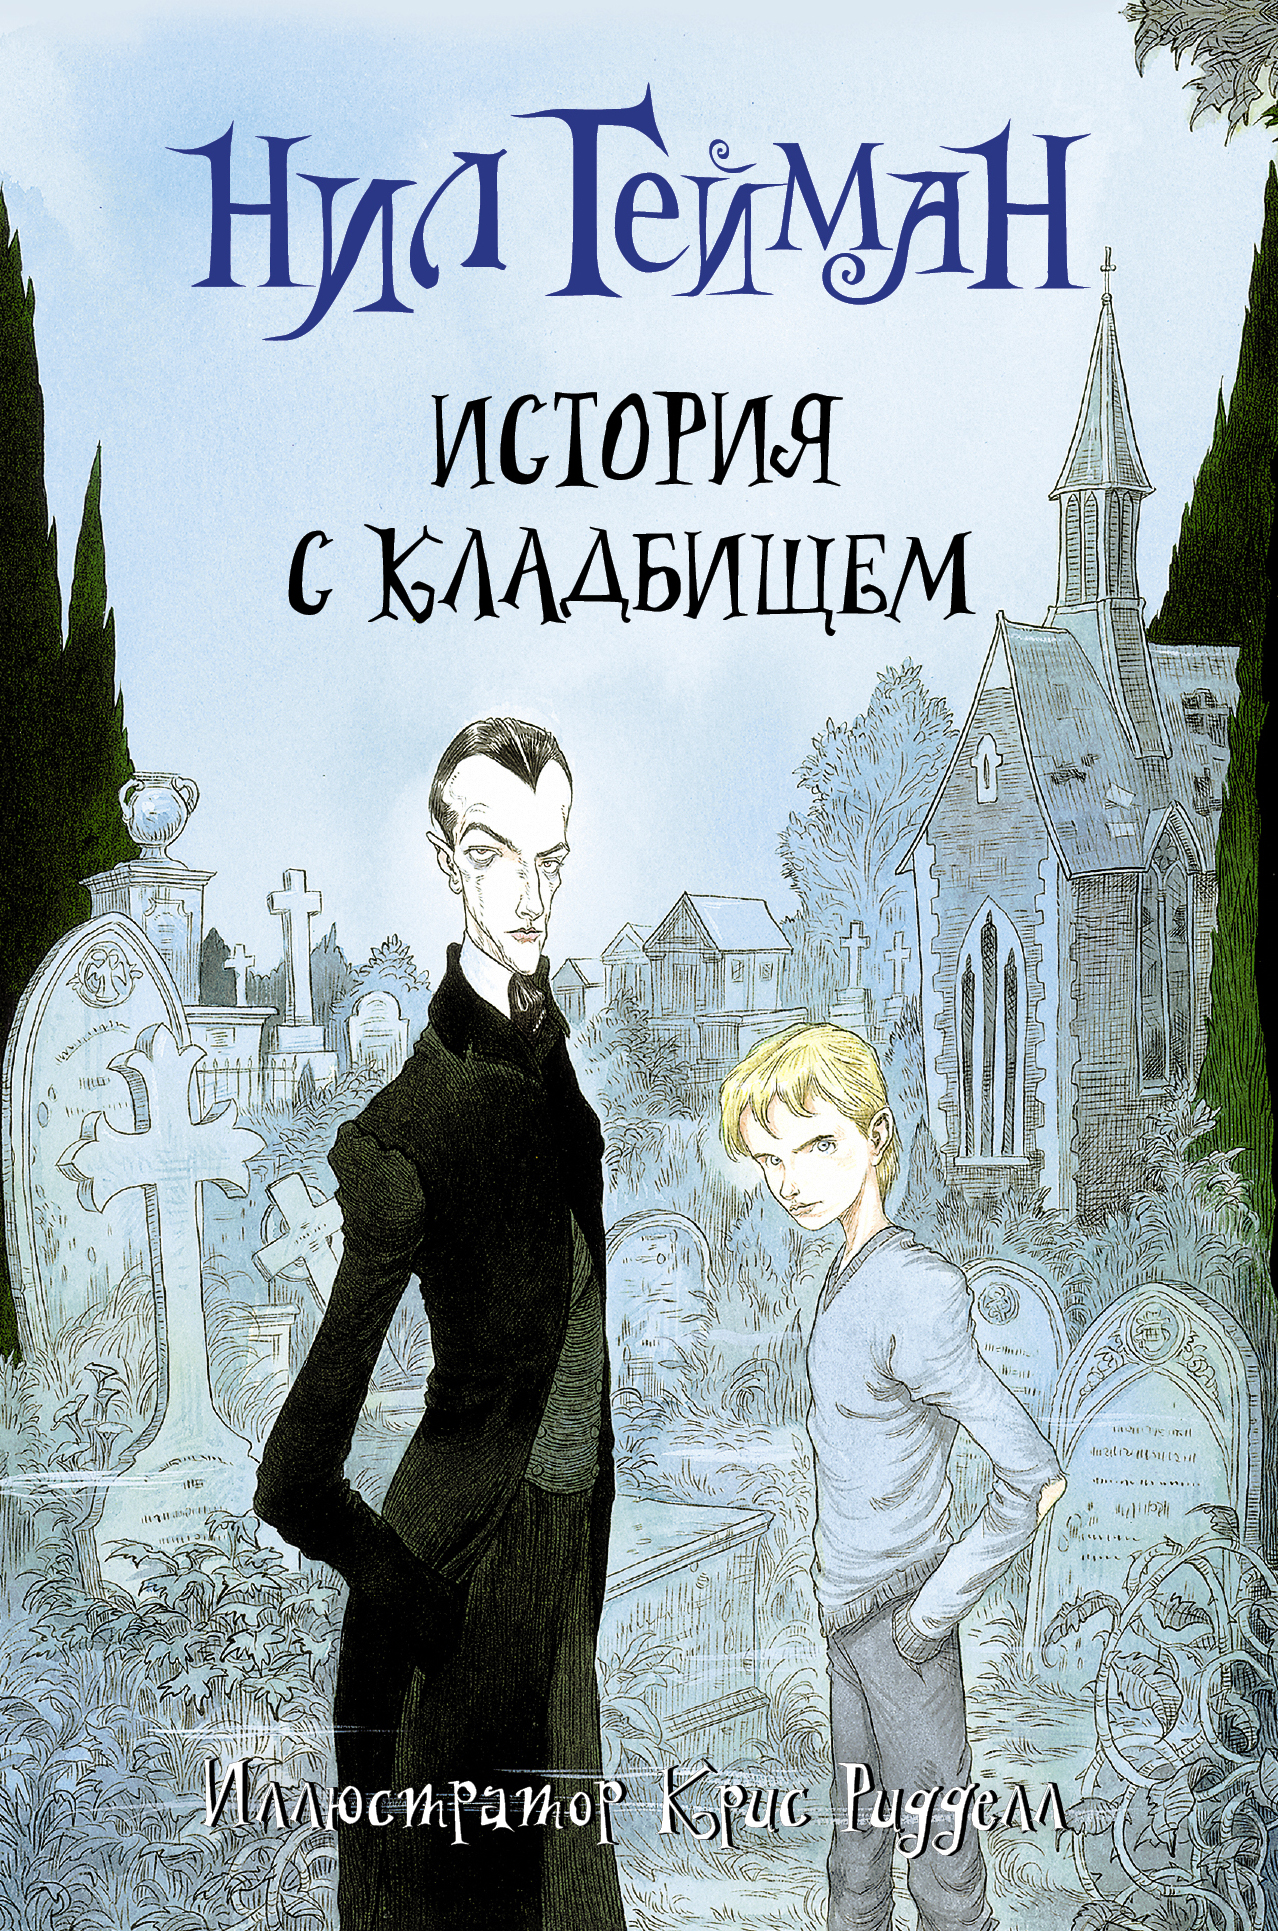 Book “История с кладбищем” by Нил Гейман